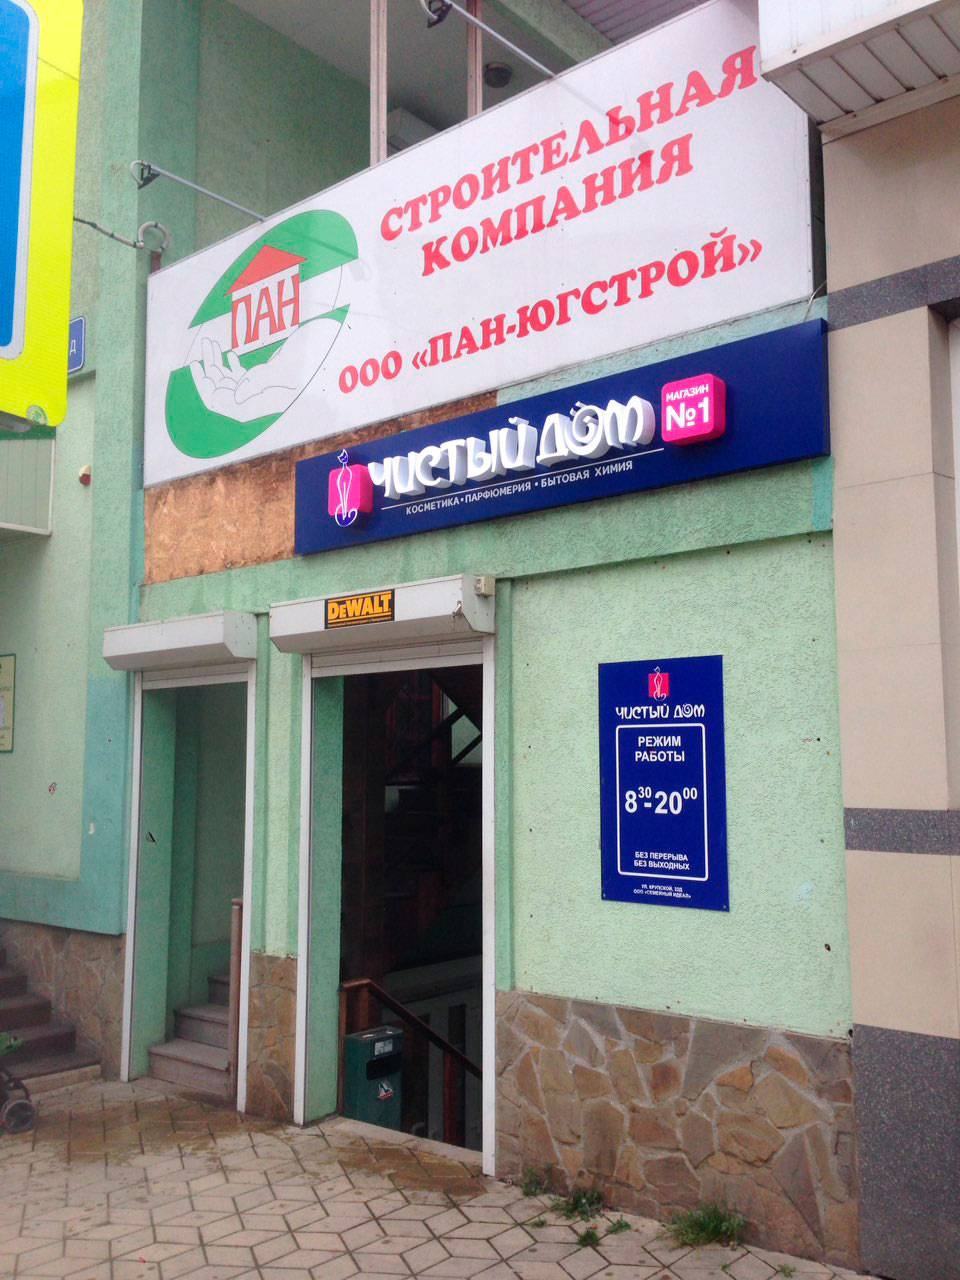 Наружная реклама в Крыму